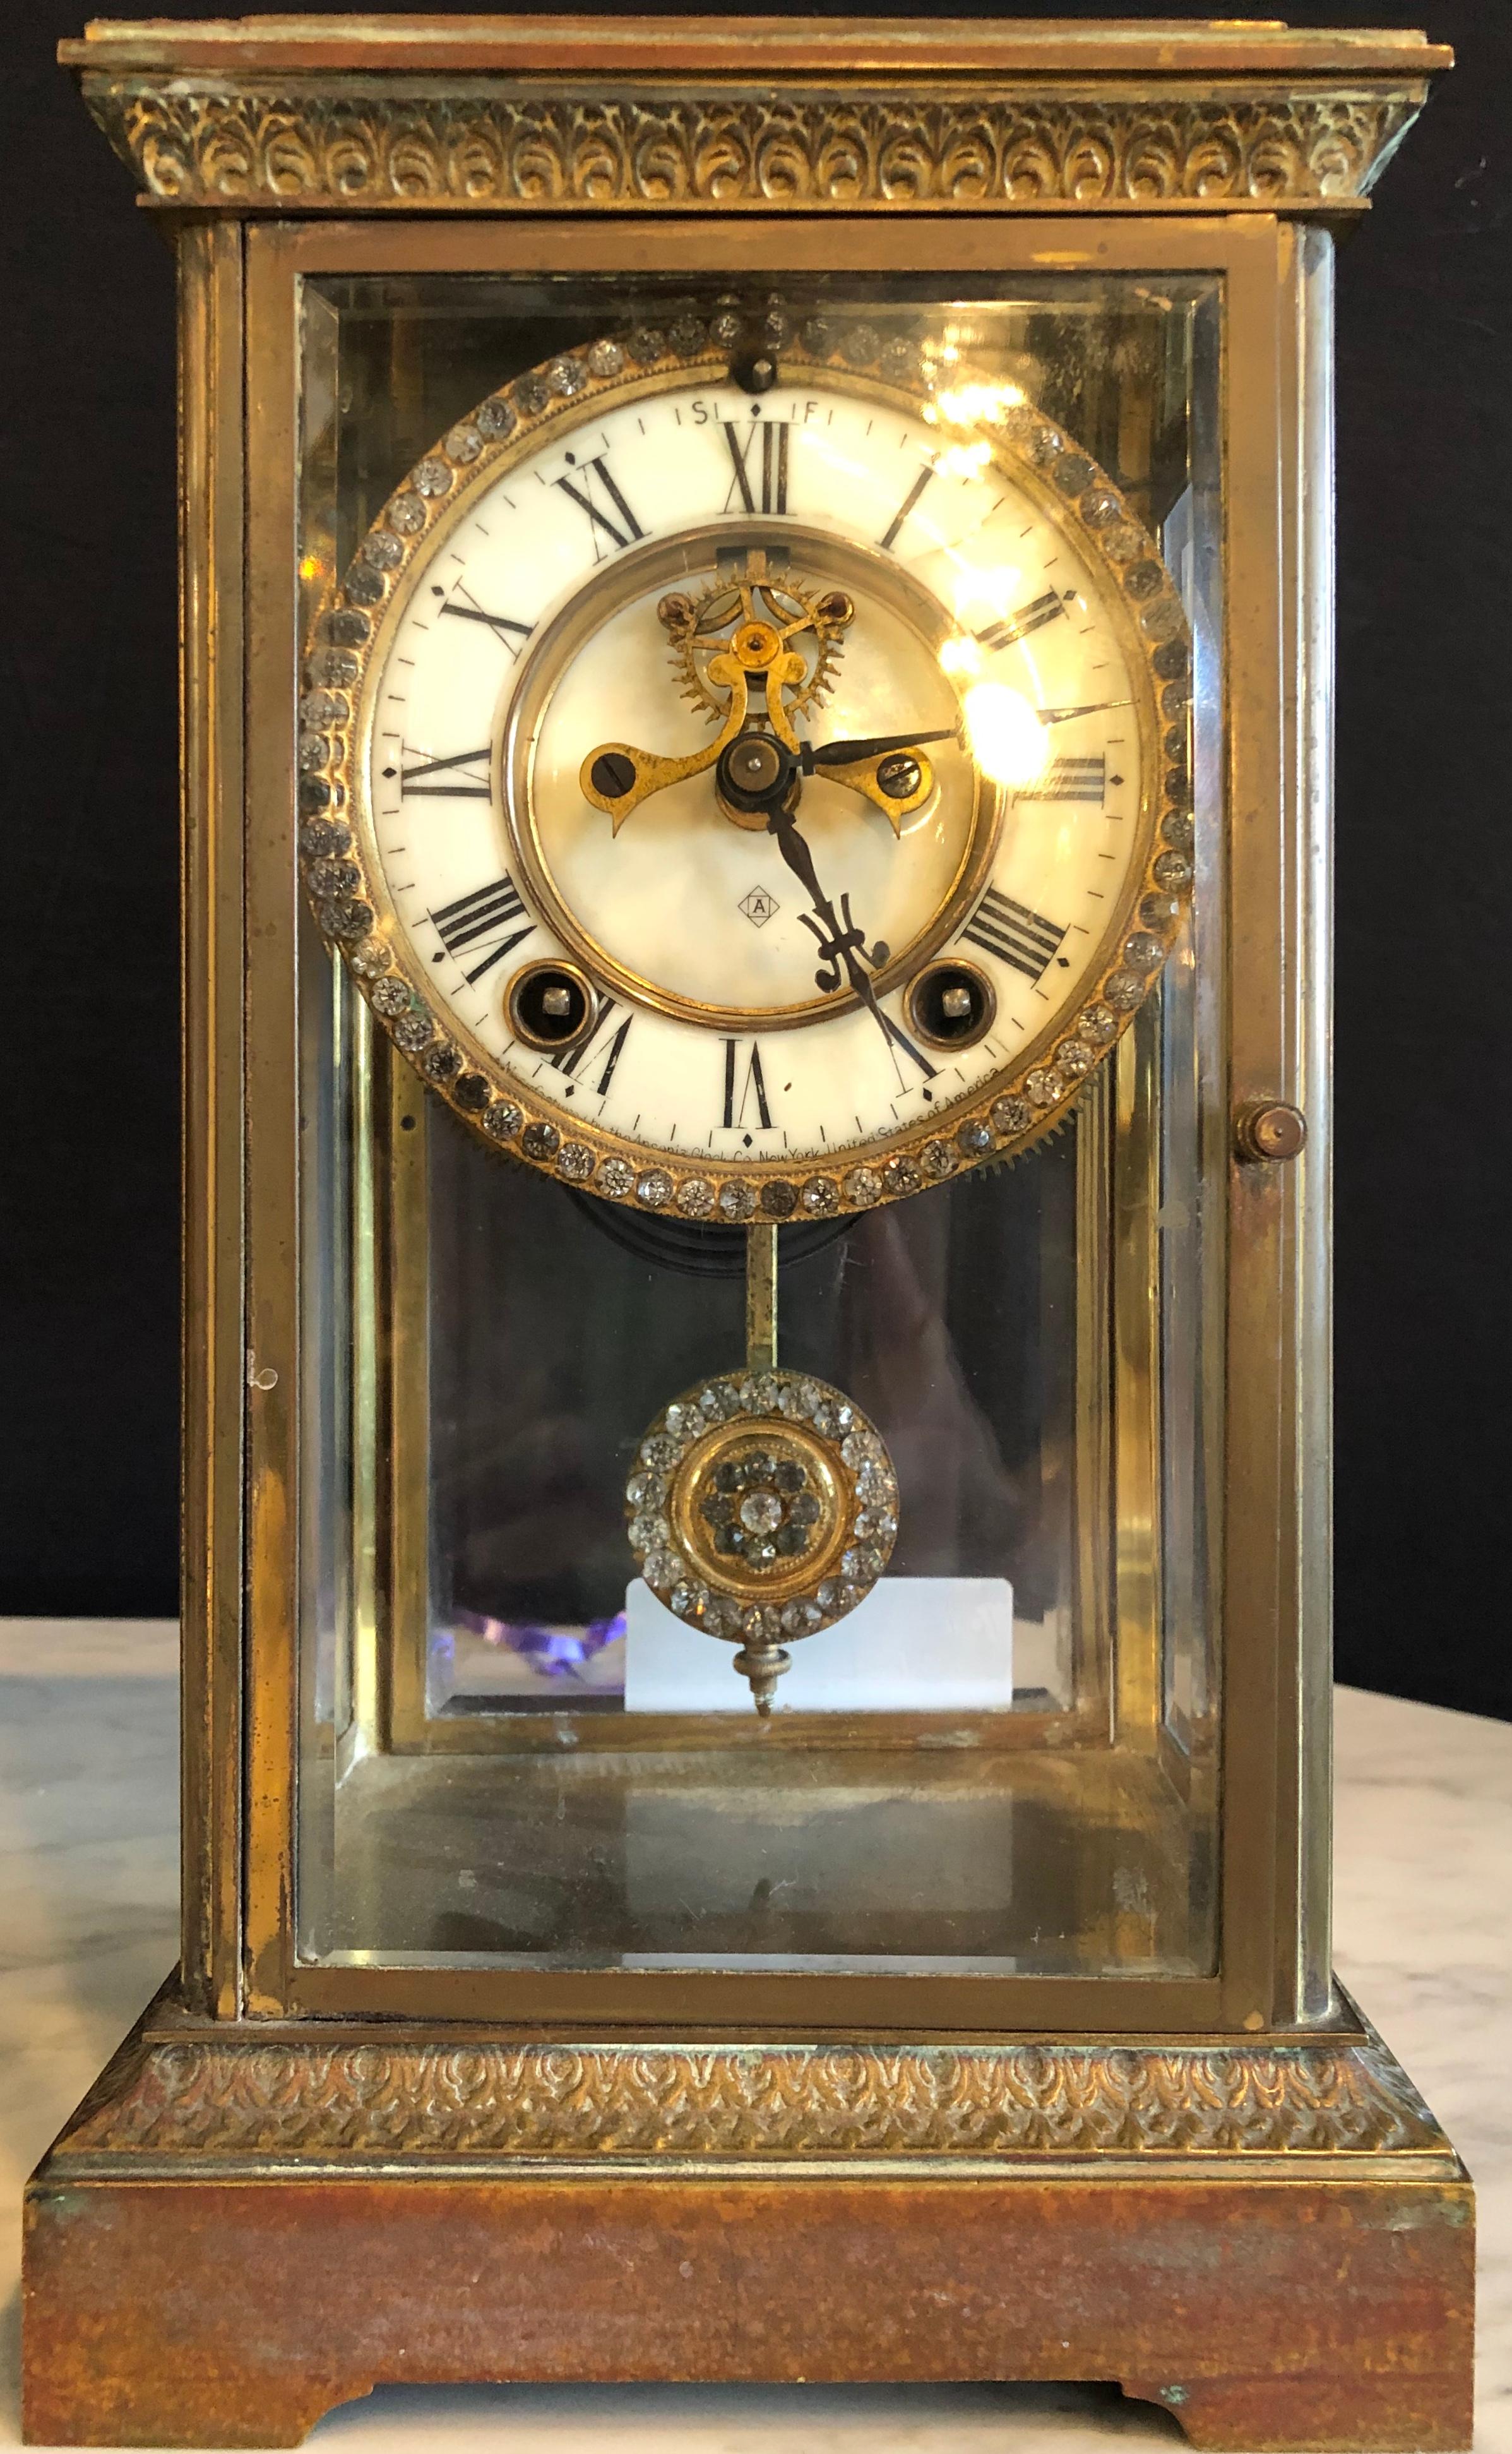 Reloj de esfera de cristal y péndulo fabricado por Ansonia Clock de Nueva York. Caja de bronce con marco de cristal biselado.